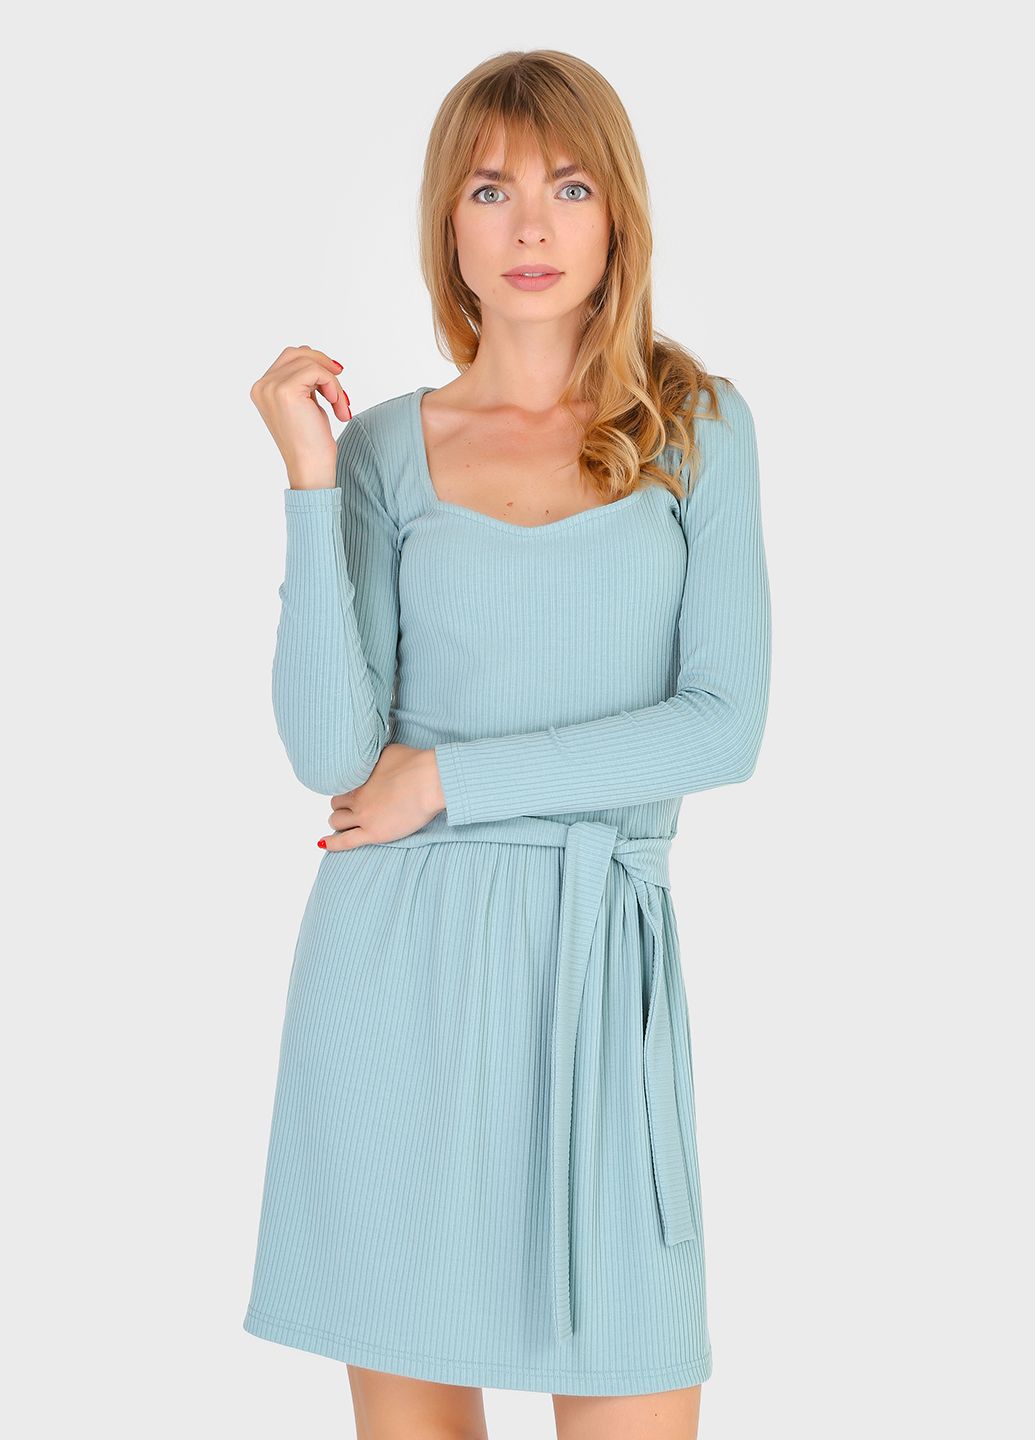 Купить Платье в рубчик Merlini Панамера 700000014 - Зелёный, 42-44 в интернет-магазине